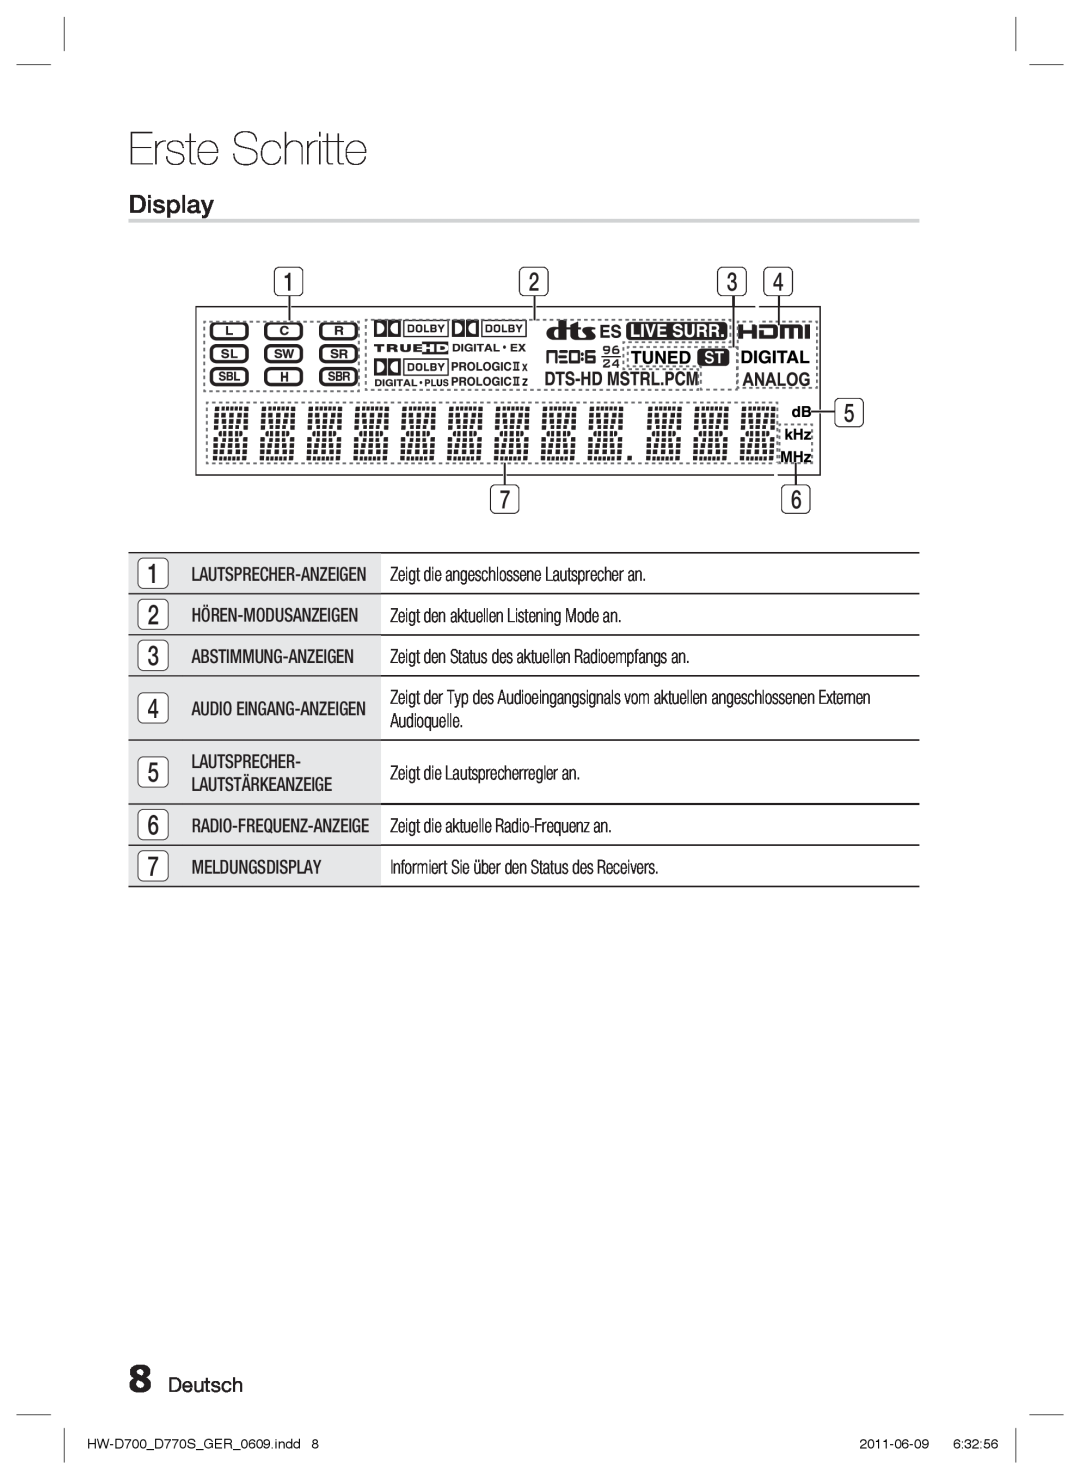 Samsung HW-D770S/EN, HW-D700/EN manual Display, Deutsch, Erste Schritte 